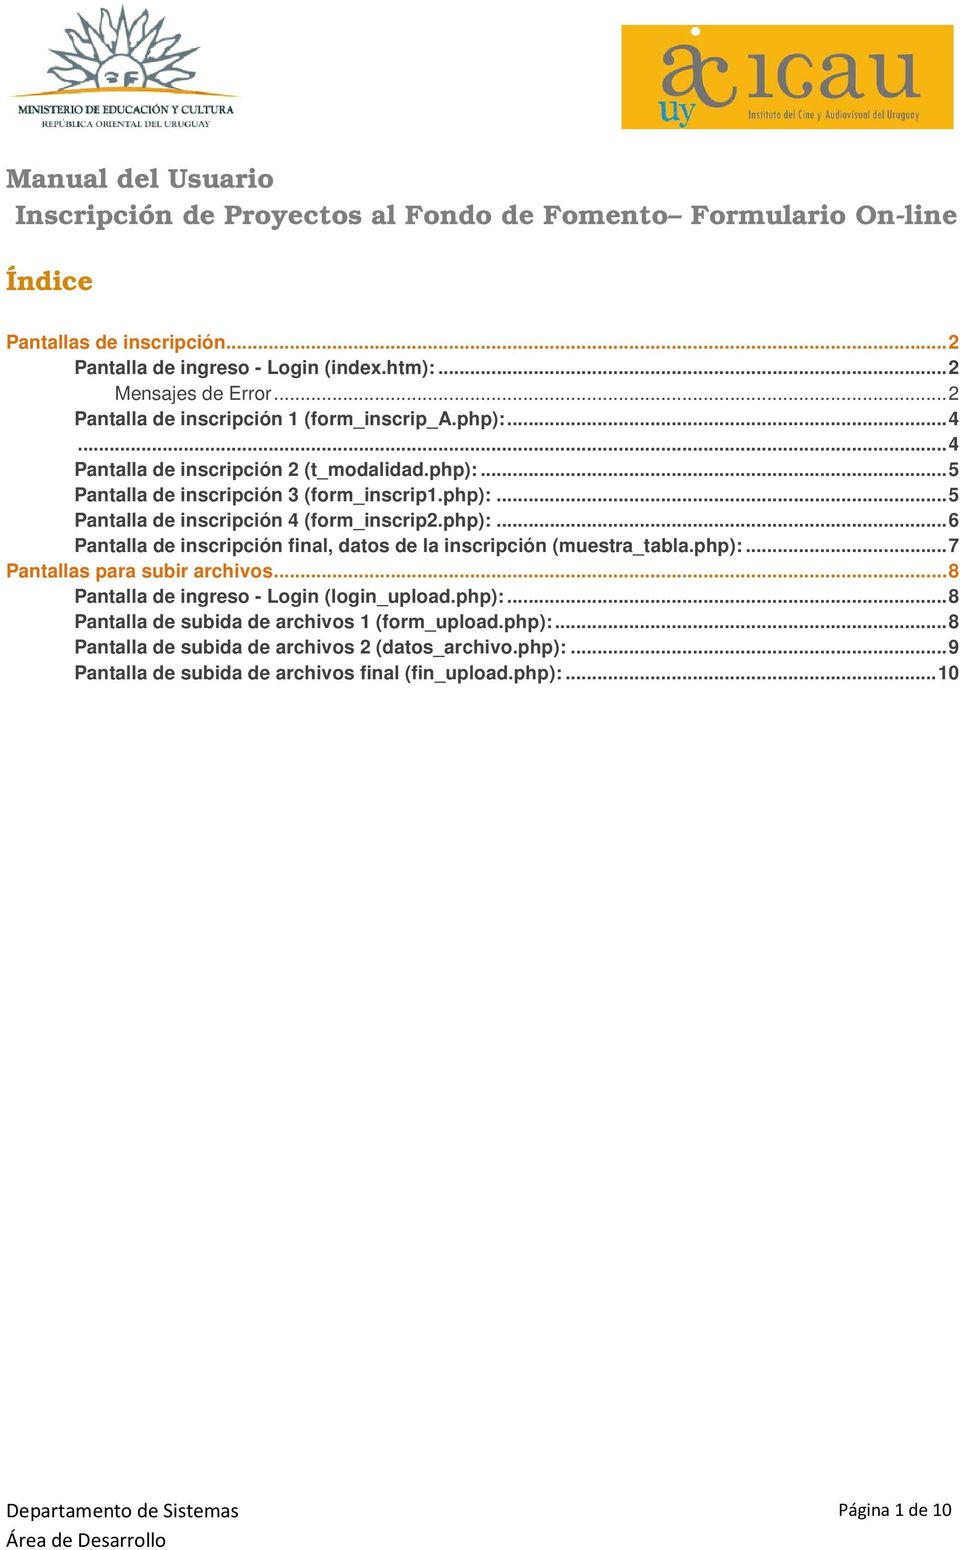 php):...6 Pantalla de inscripción final, datos de la inscripción (muestra_tabla.php):...7 Pantallas para subir archivos...8 Pantalla de ingreso - Login (login_upload.php):...8 Pantalla de subida de archivos 1 (form_upload.